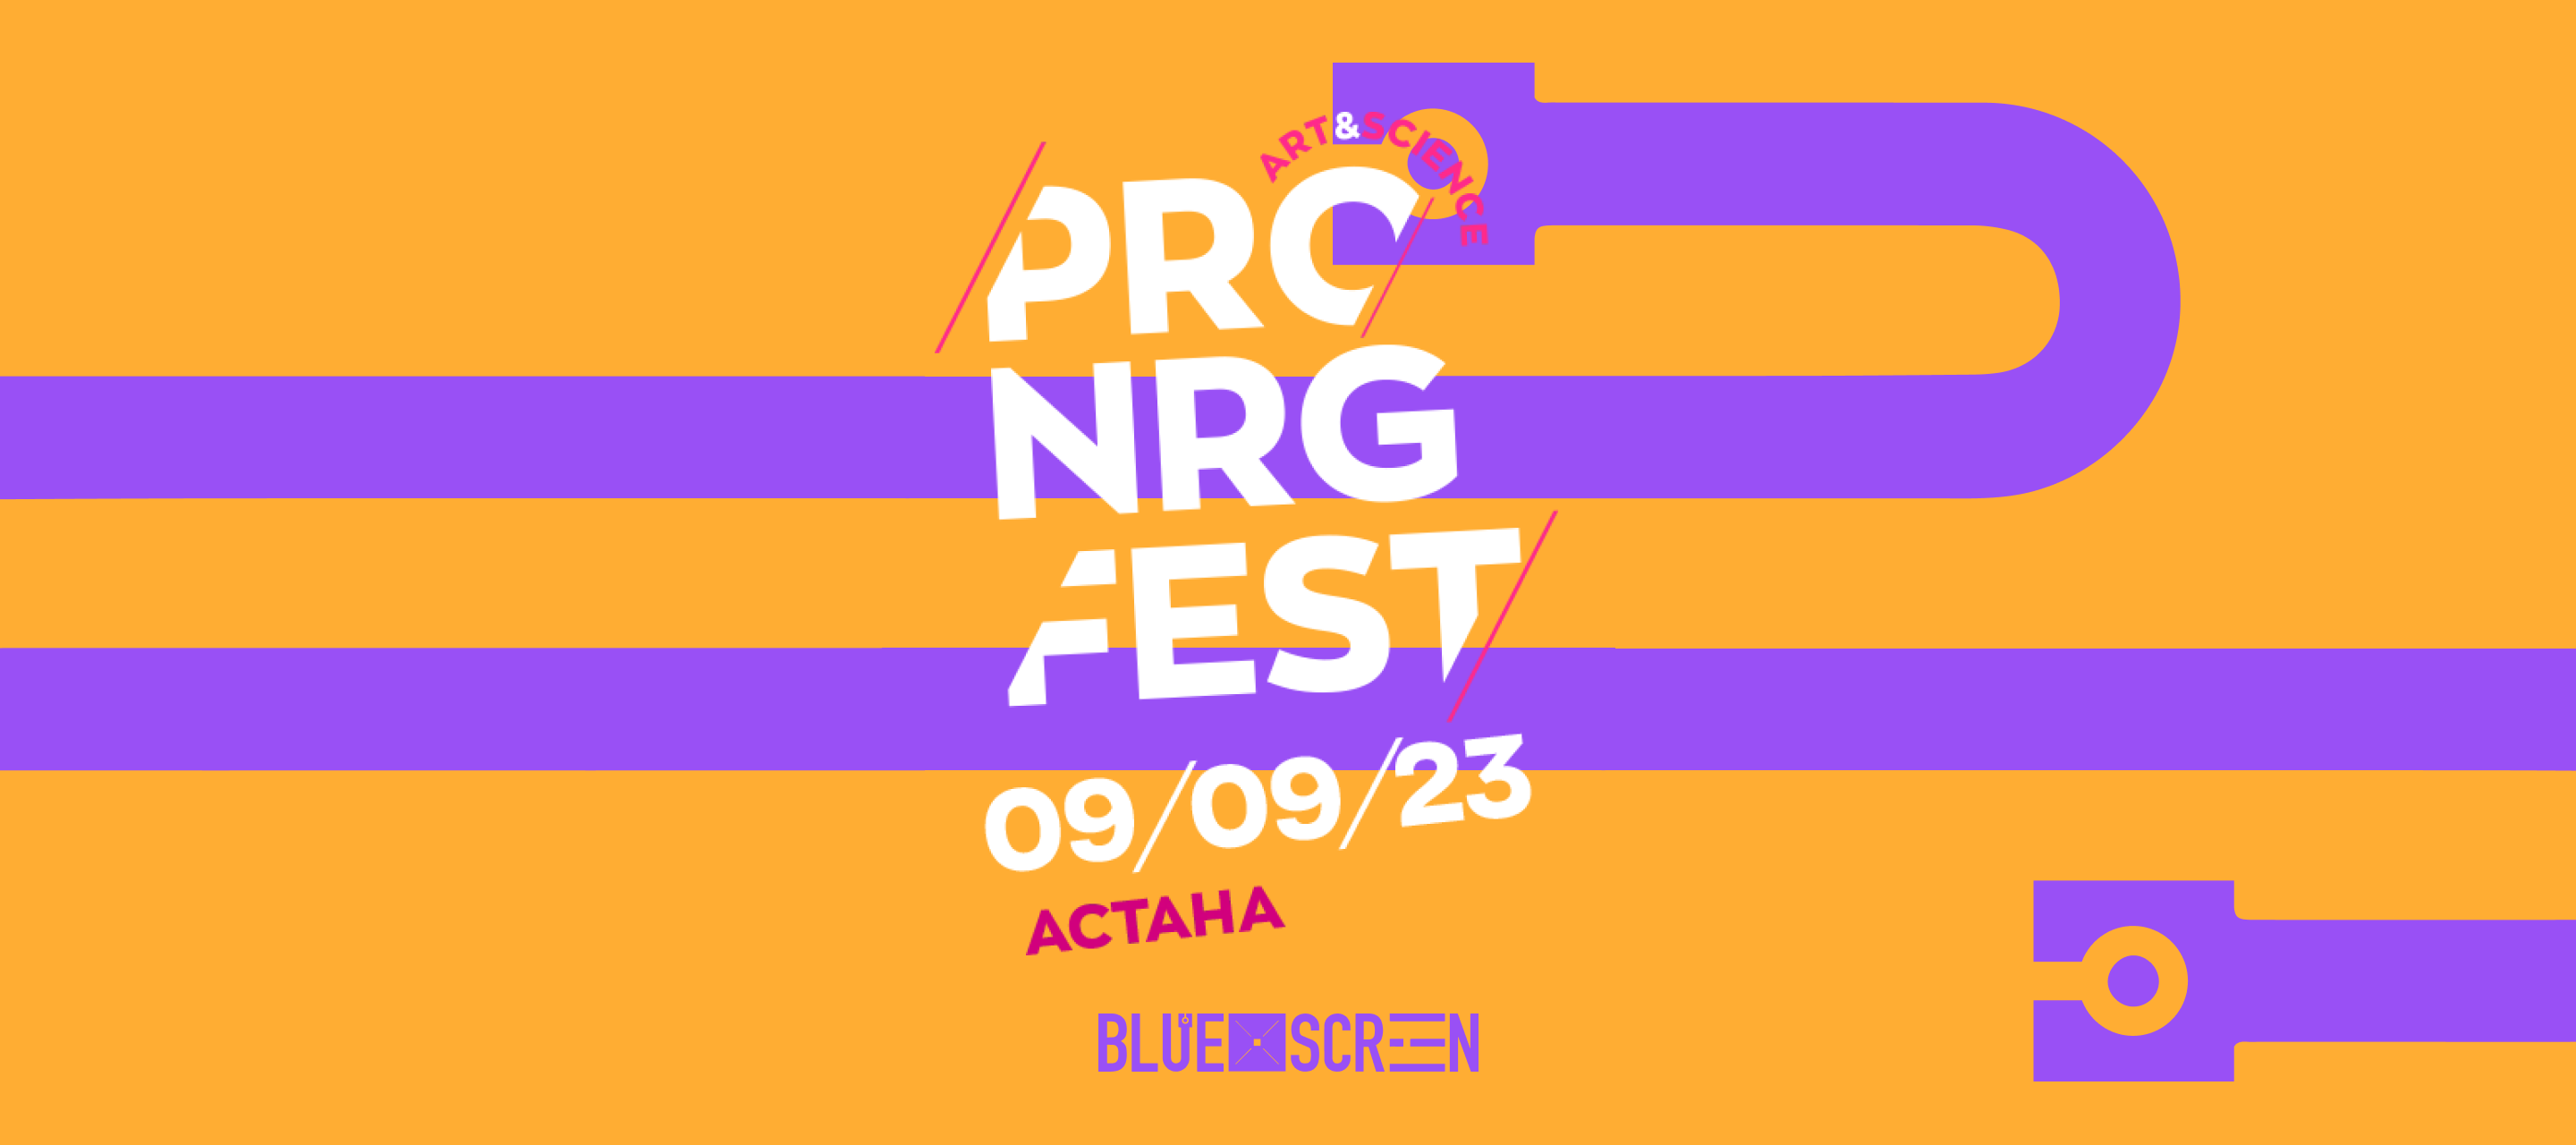 В Астане пройдет научный семейный фестиваль PRO.NRG FEST